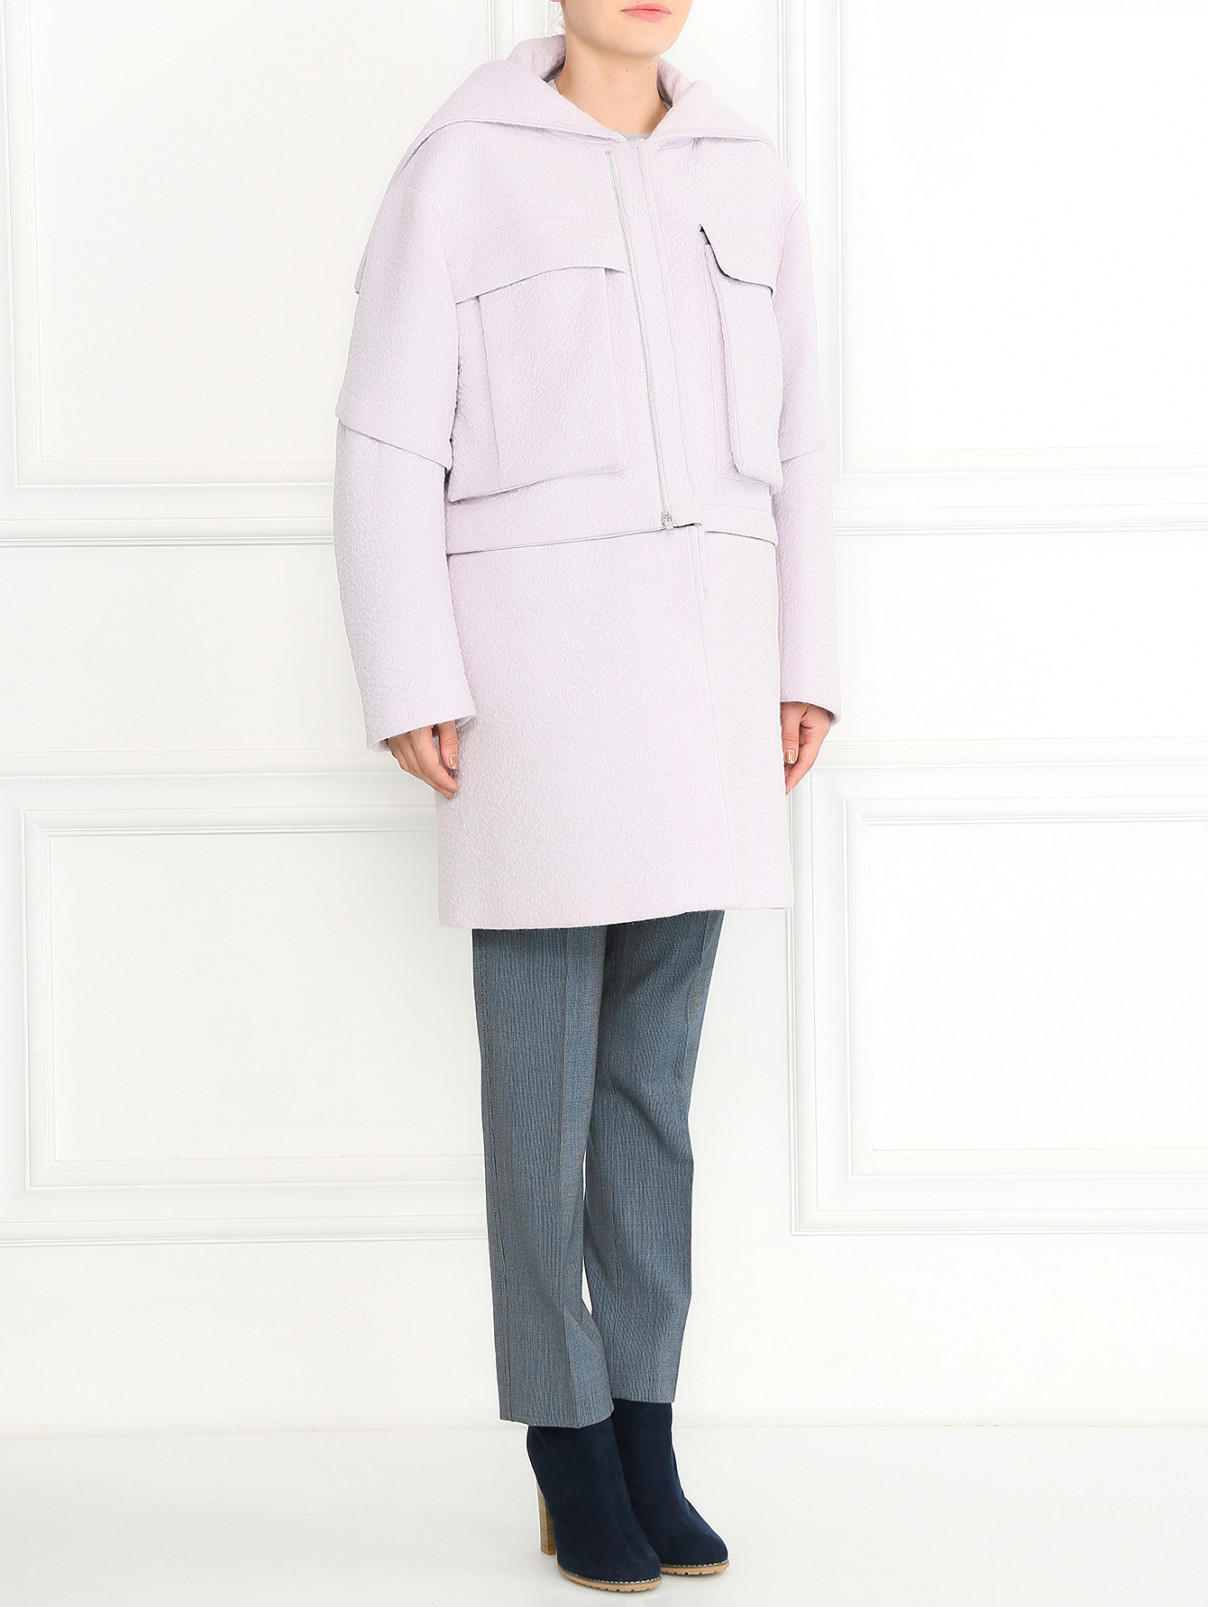 Пальто-трансформер из шерсти с накладными карманами Kenzo  –  Модель Общий вид  – Цвет:  Фиолетовый